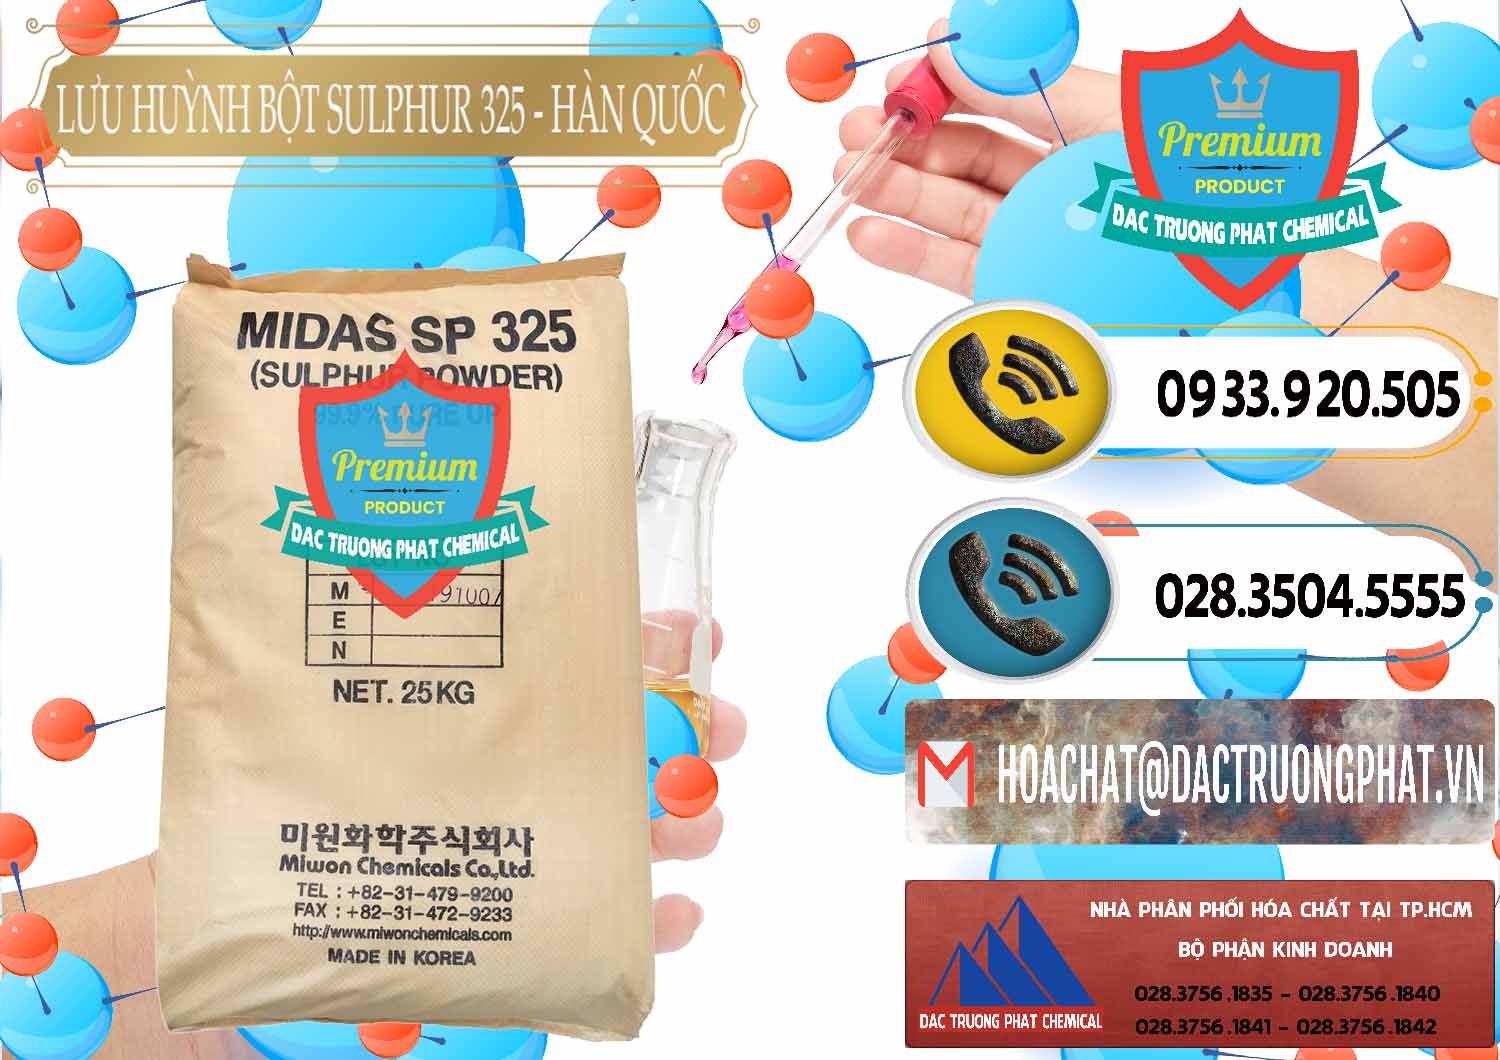 Nơi chuyên cung ứng và bán Lưu huỳnh Bột - Sulfur Powder Midas SP 325 Hàn Quốc Korea - 0198 - Cty chuyên cung cấp ( nhập khẩu ) hóa chất tại TP.HCM - hoachatdetnhuom.vn